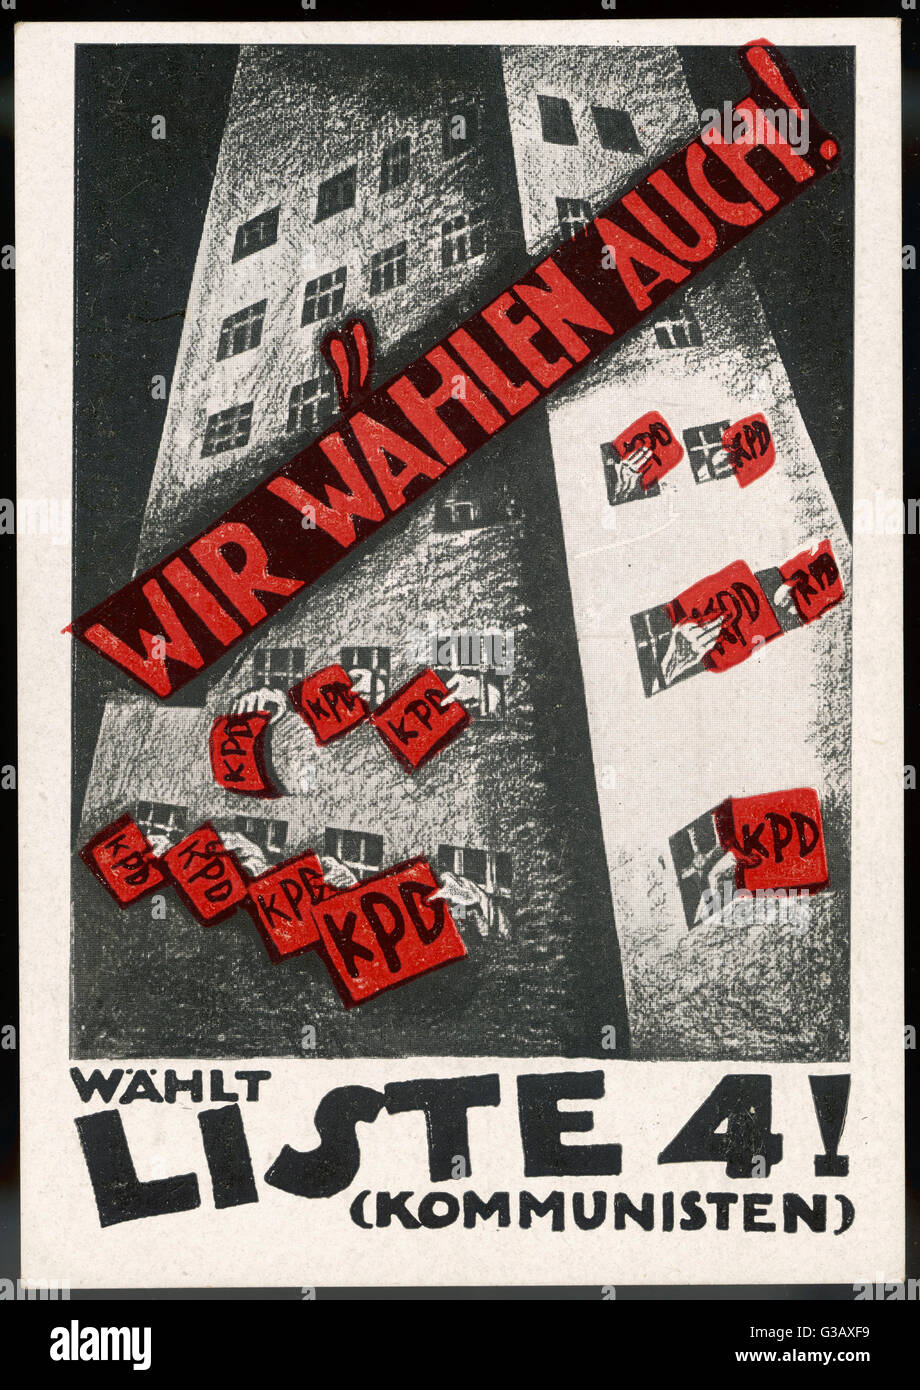 Cartel invitando a votar comunista (KPD = Kommunistische Partei Deutschlands) en las elecciones alemanas Fecha: 1924 Foto de stock